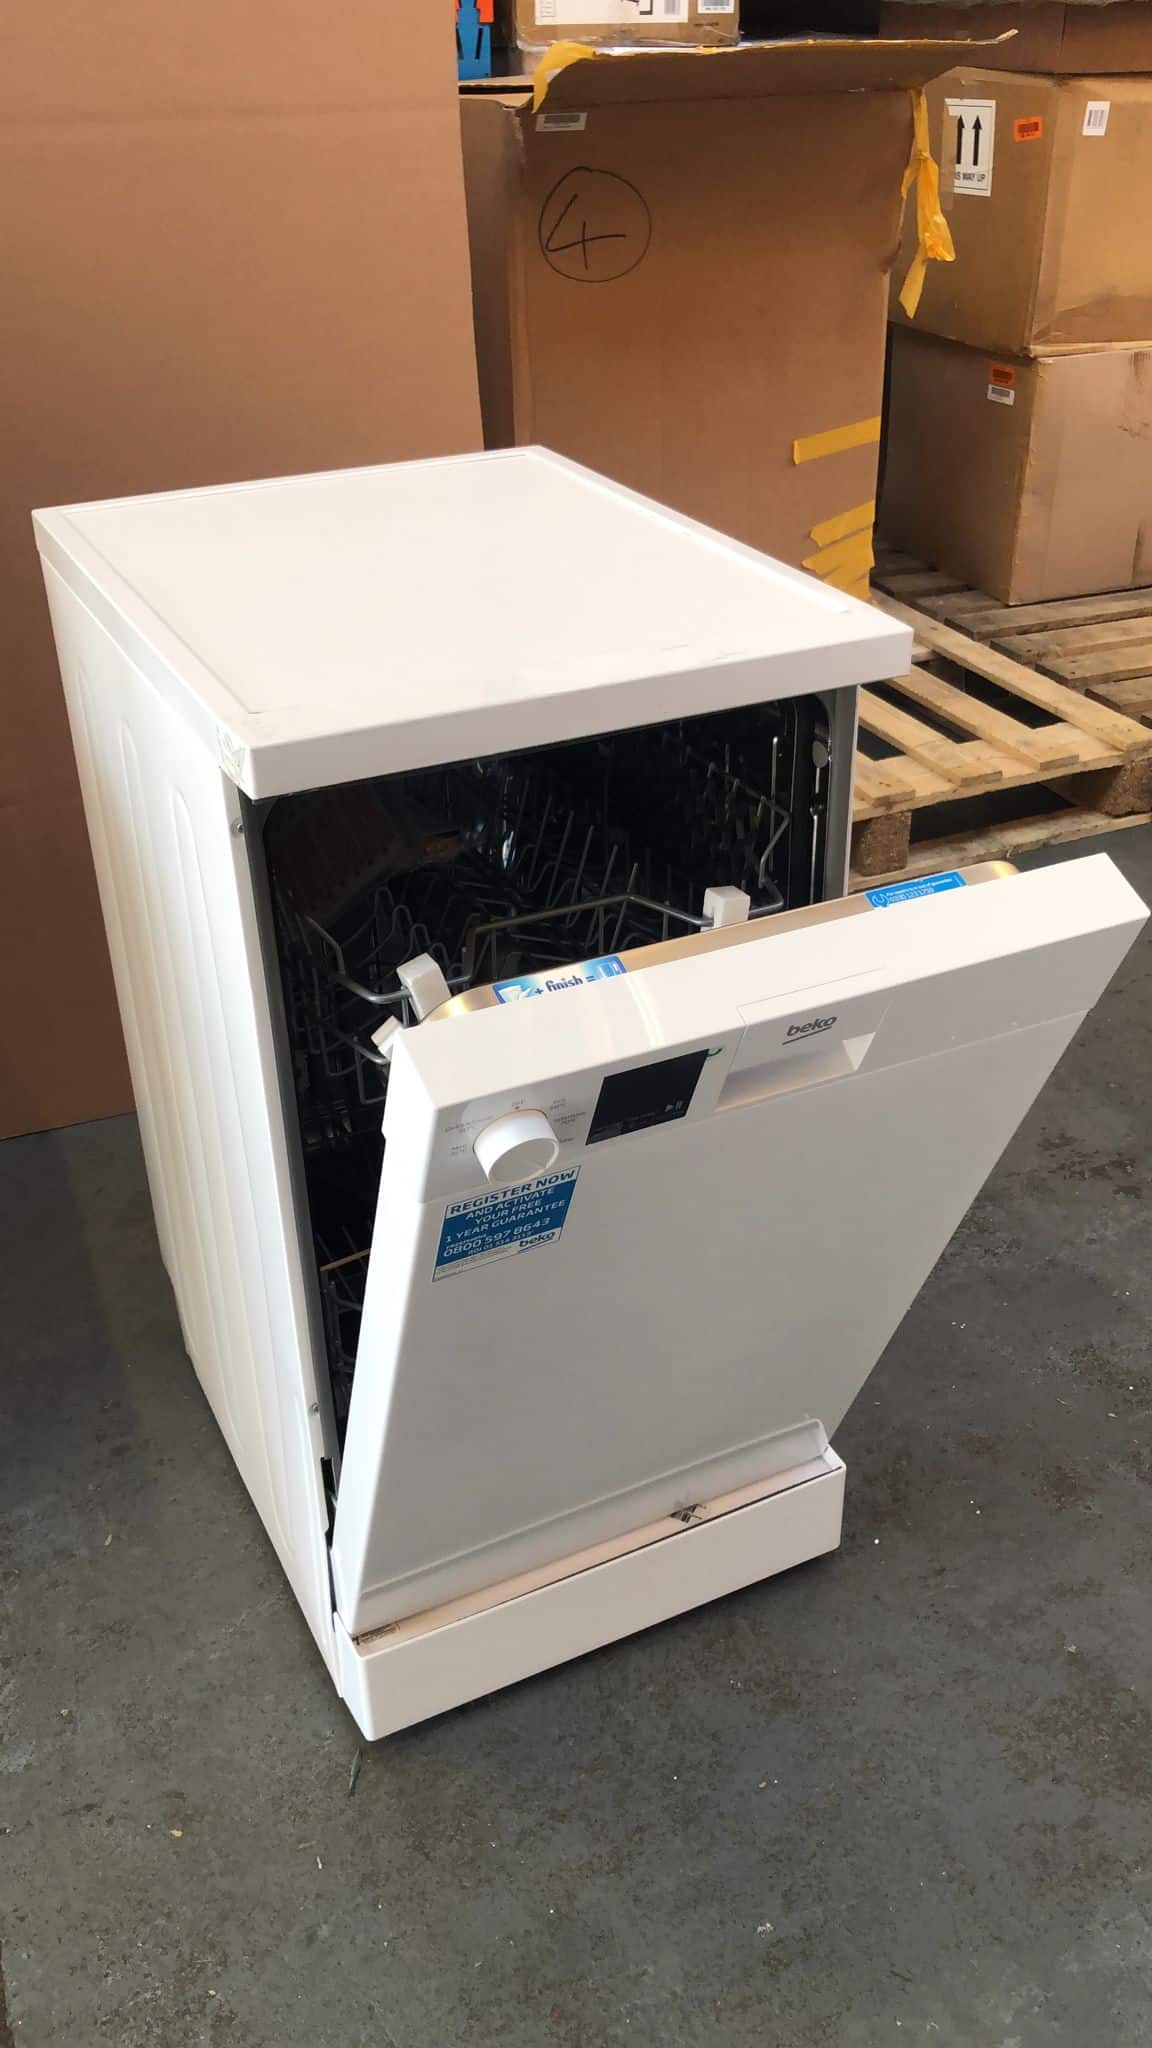 Beko DVS05Q20W Freestanding Slimline Dishwasher - White 7006